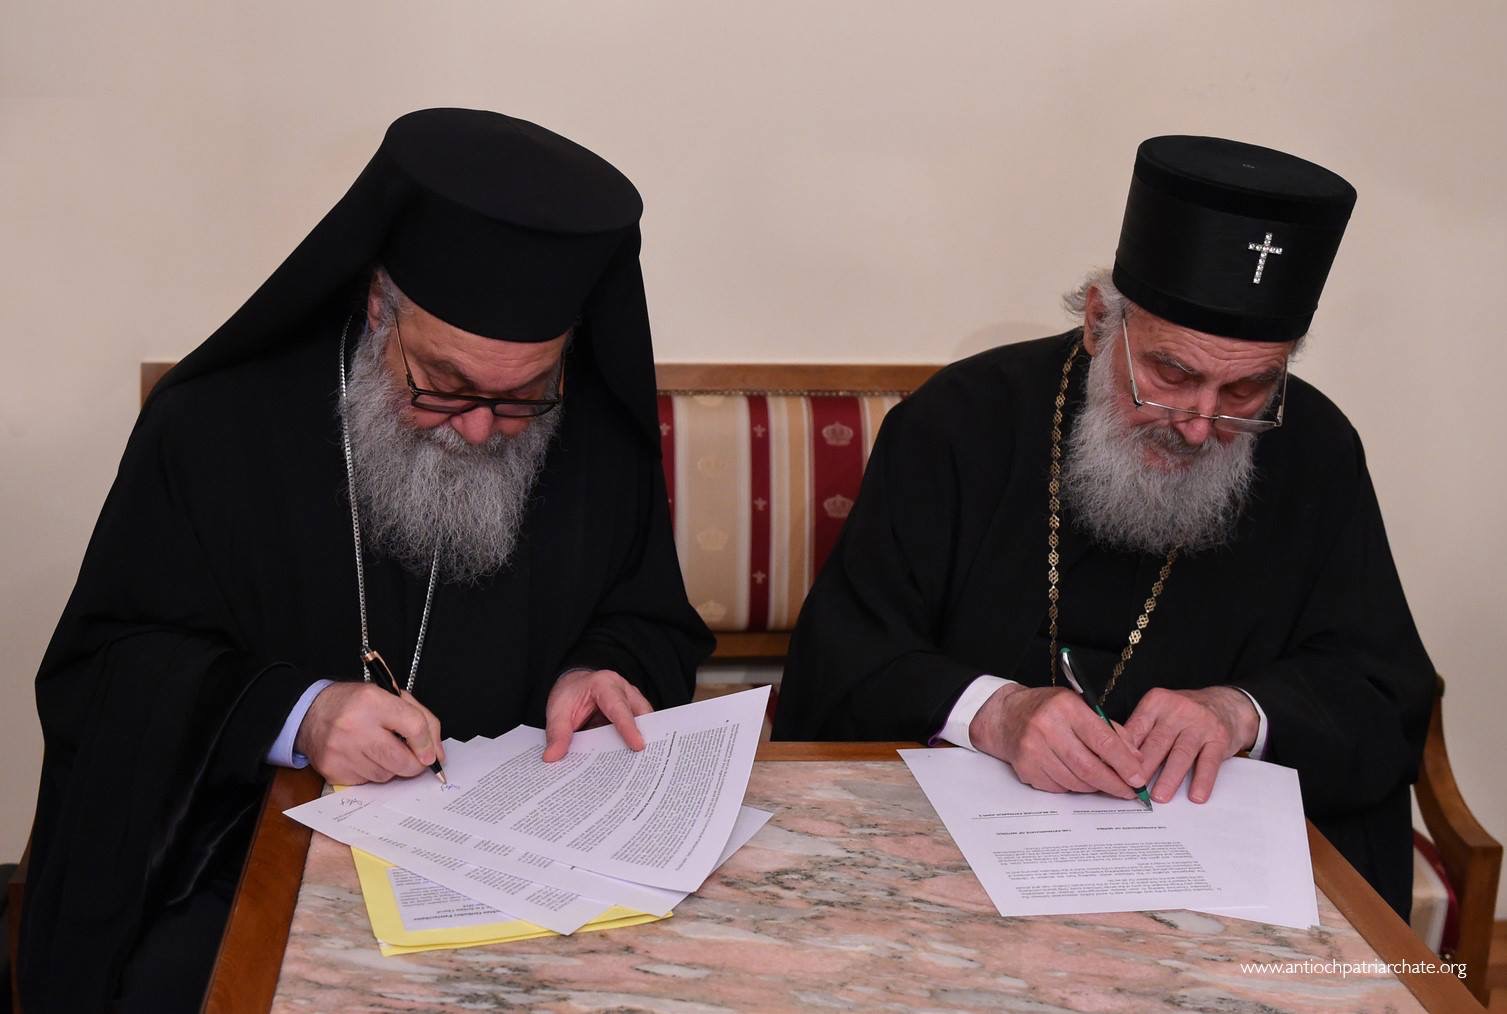 Déclaration commune publiée par le Patriarcat orthodoxe serbe et le Patriarcat grec-orthodoxe d’Antioche et de tout l’Orient